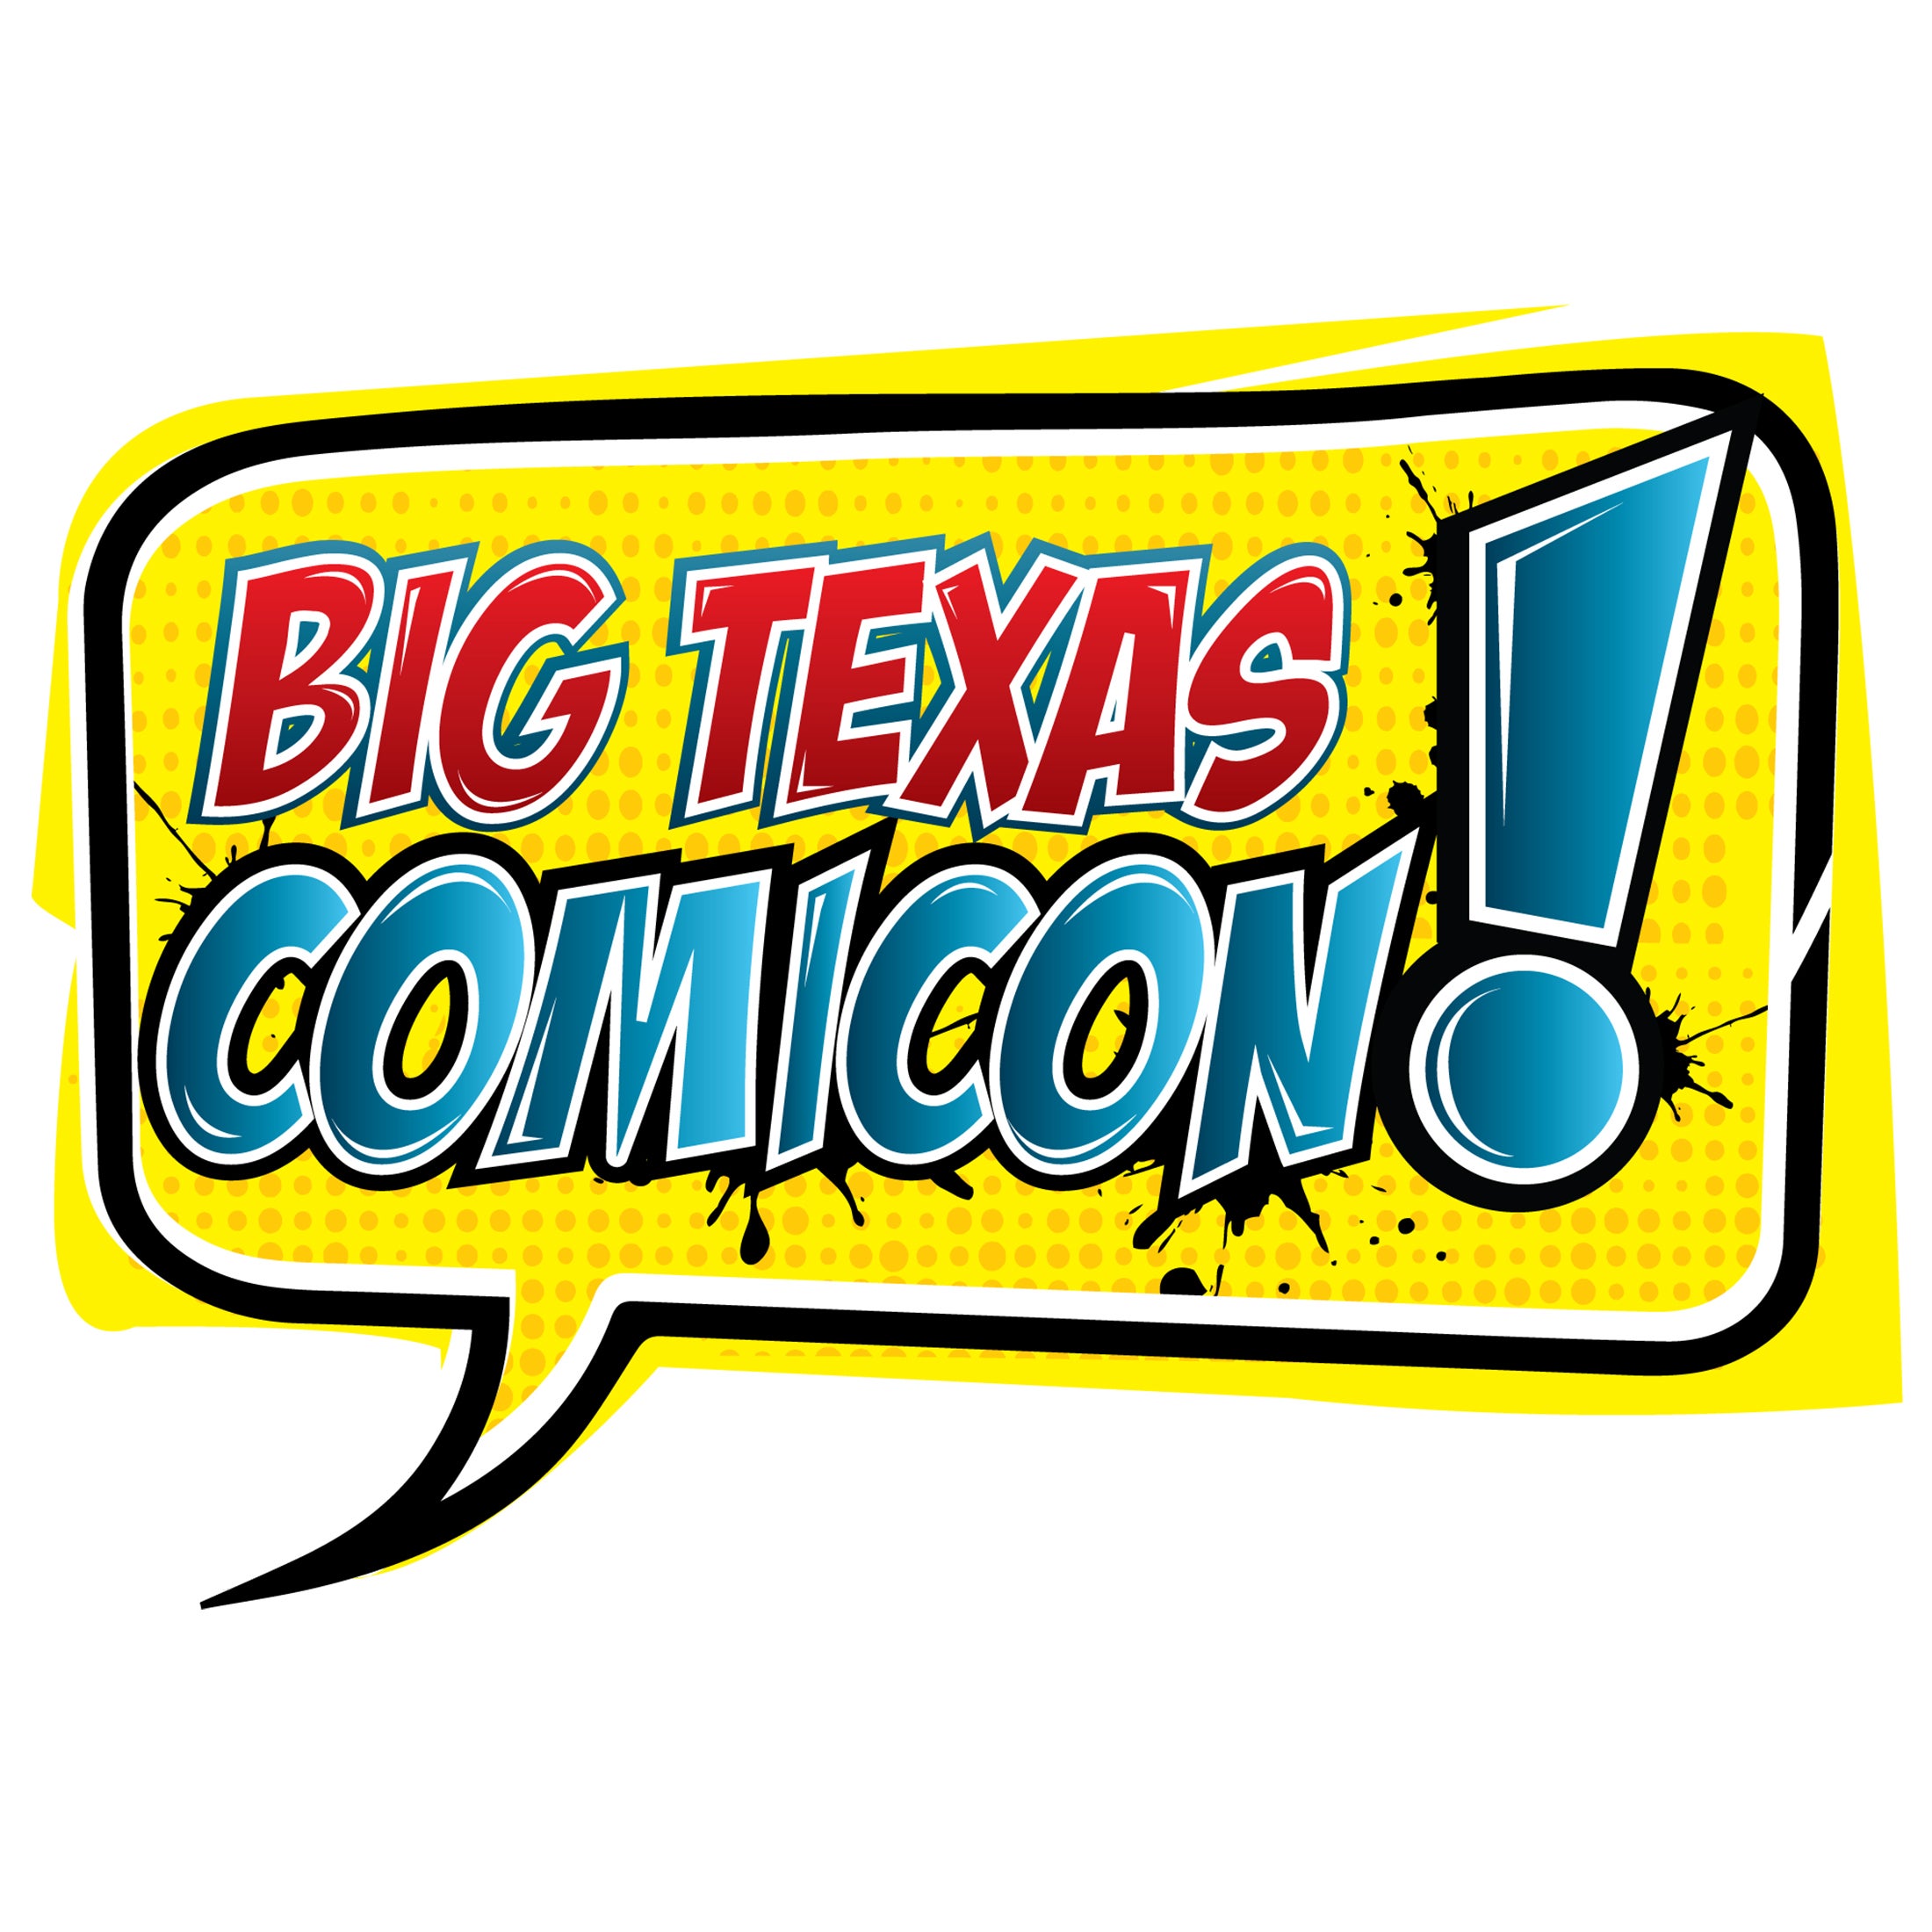 Big Texas Comicon presales in San Antonio